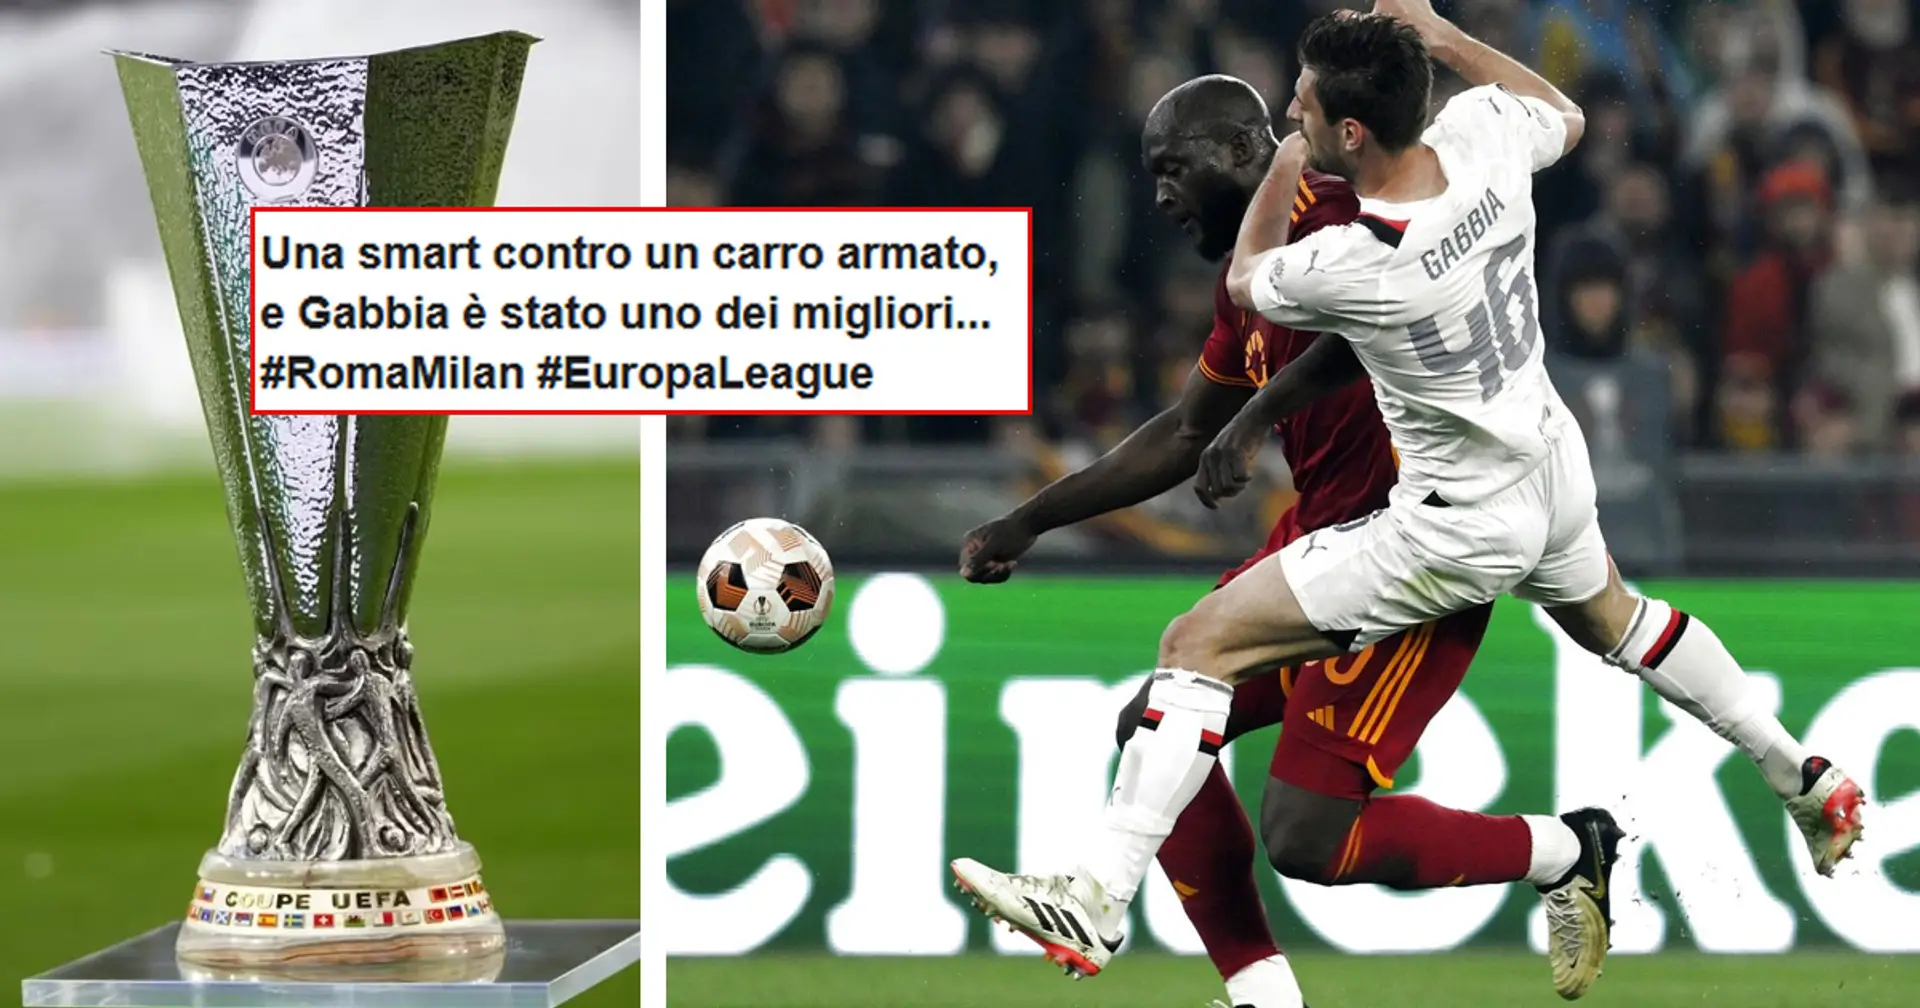 Gabbia rimbalza su Lukaku nel 2° gol di Roma-Milan, la reazione dei tifosi sui social: "Ha preso il muro, fratellì!"